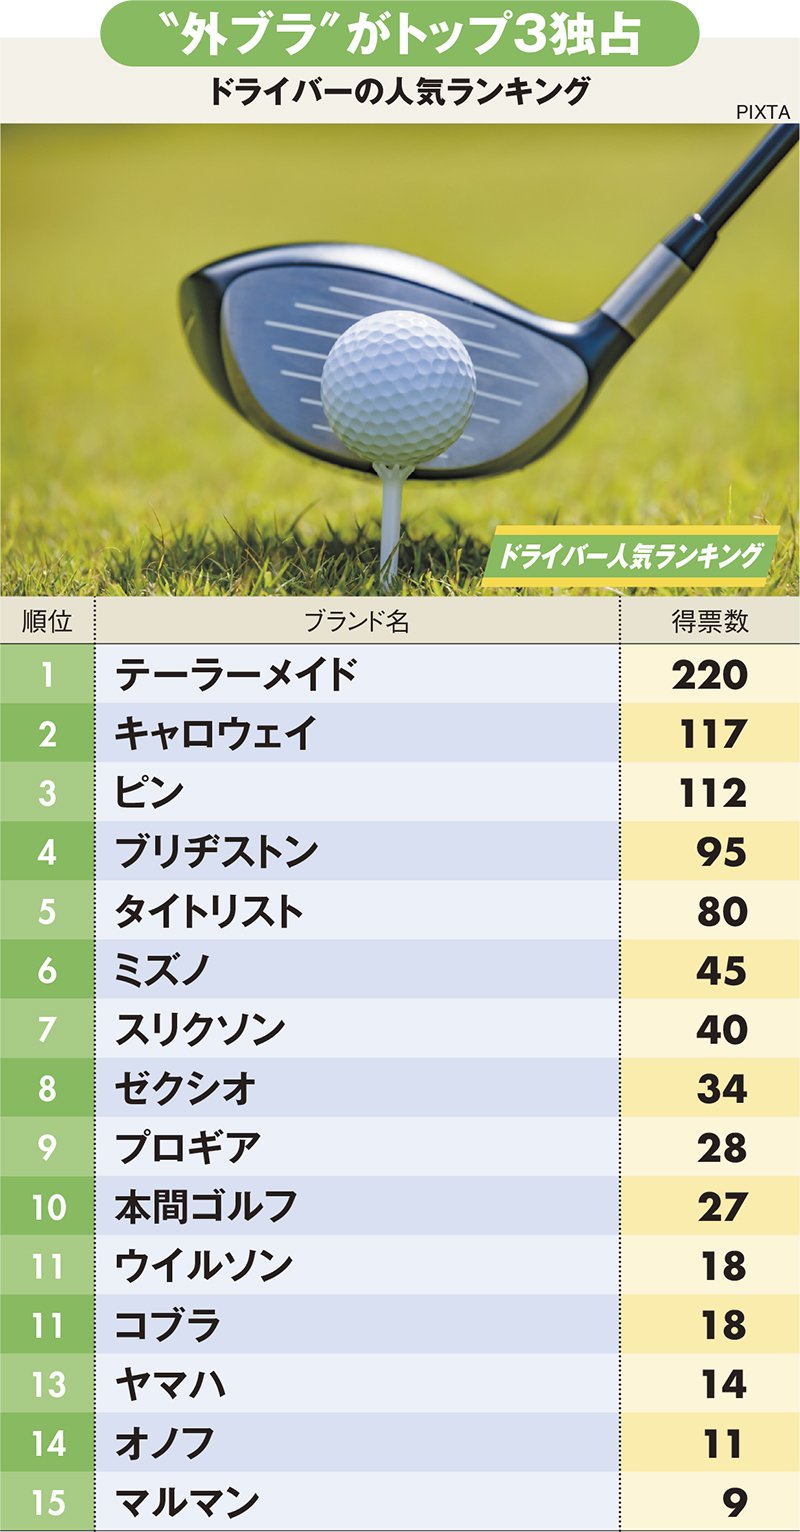 ゴルフギア人気ランキング【ドライバー・アイアン・ボール】海外